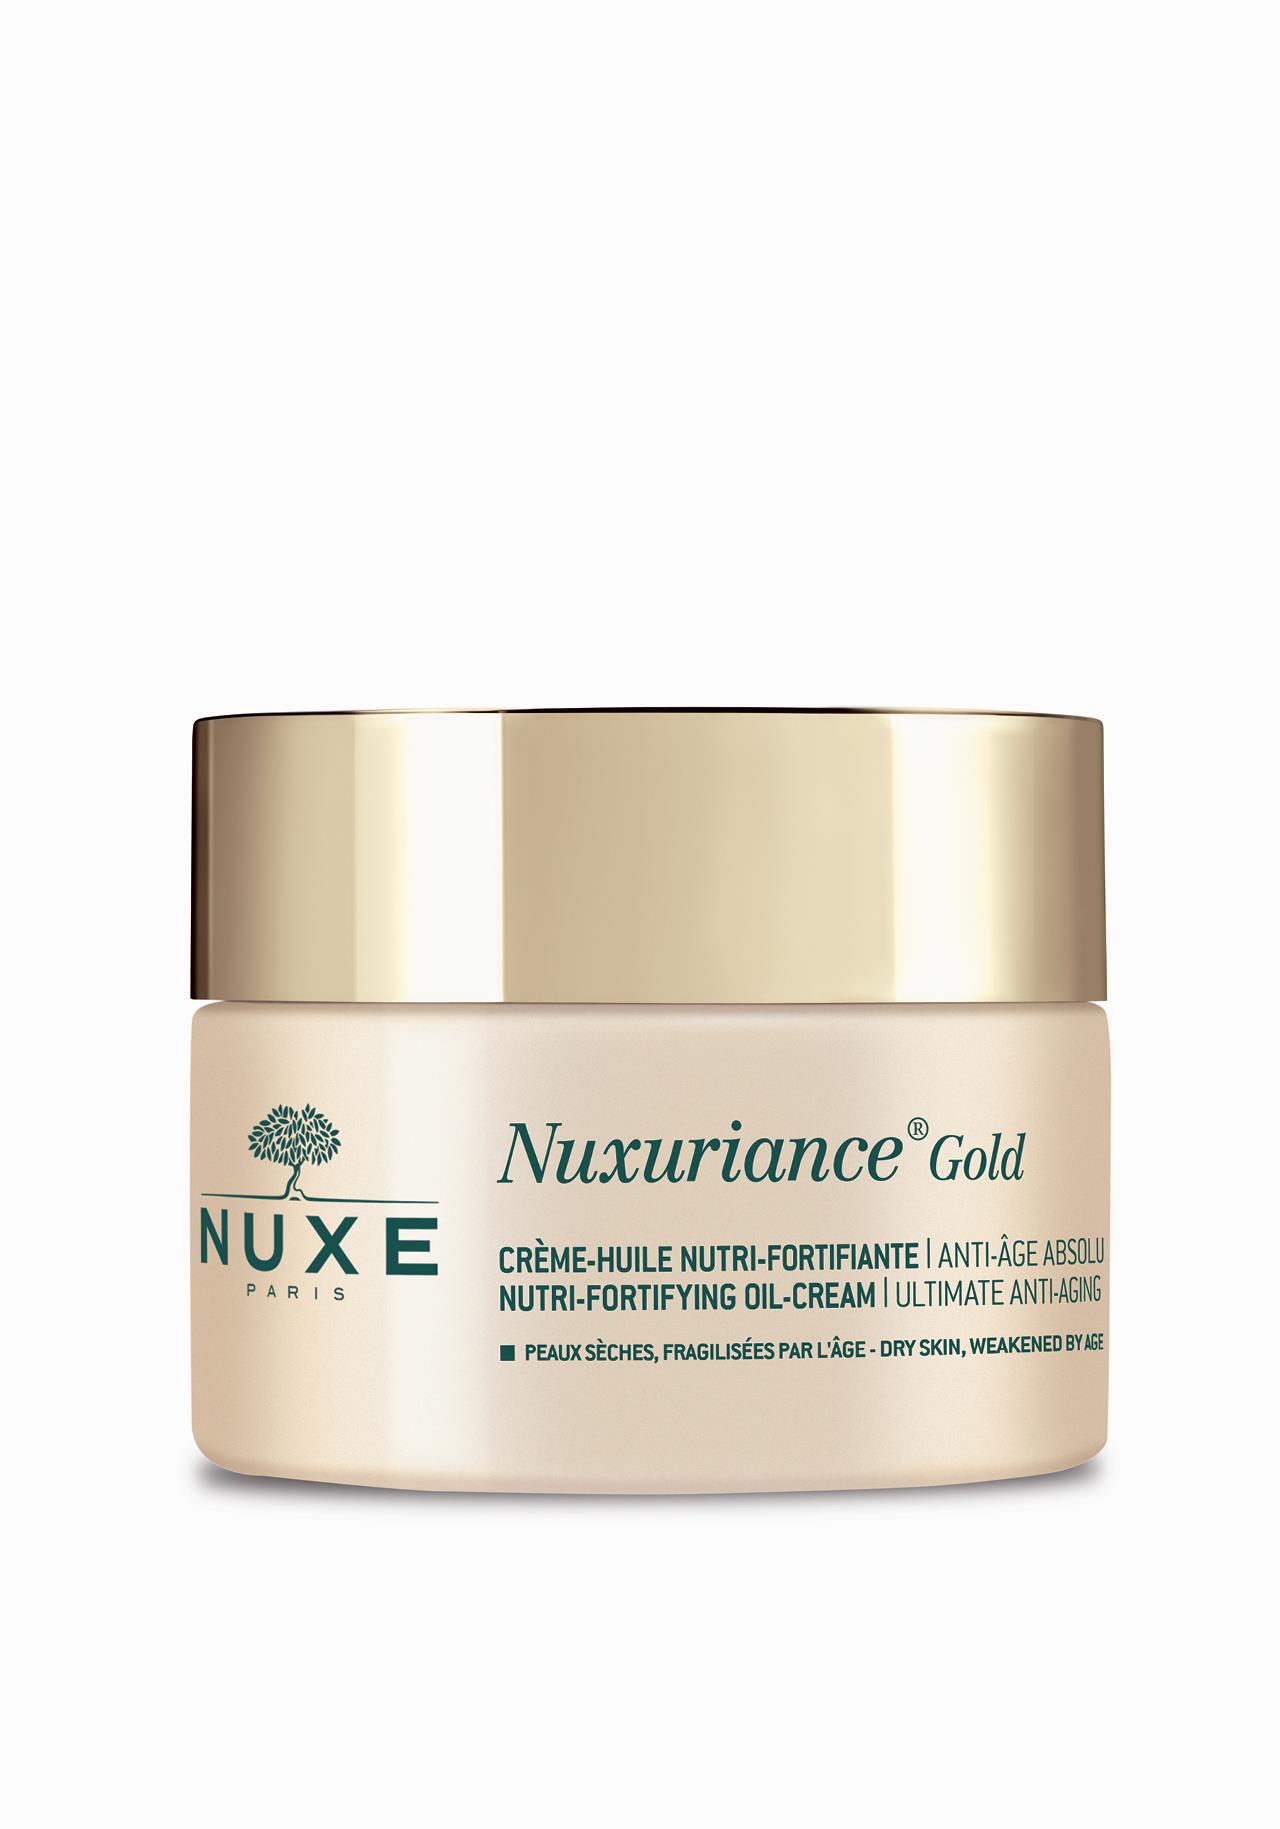 Crema Nuxuriance Gold Crème-Huile Nutri-Fortifiante de Nuxe Las mejores cremas para mujeres de 50 años y más 2019